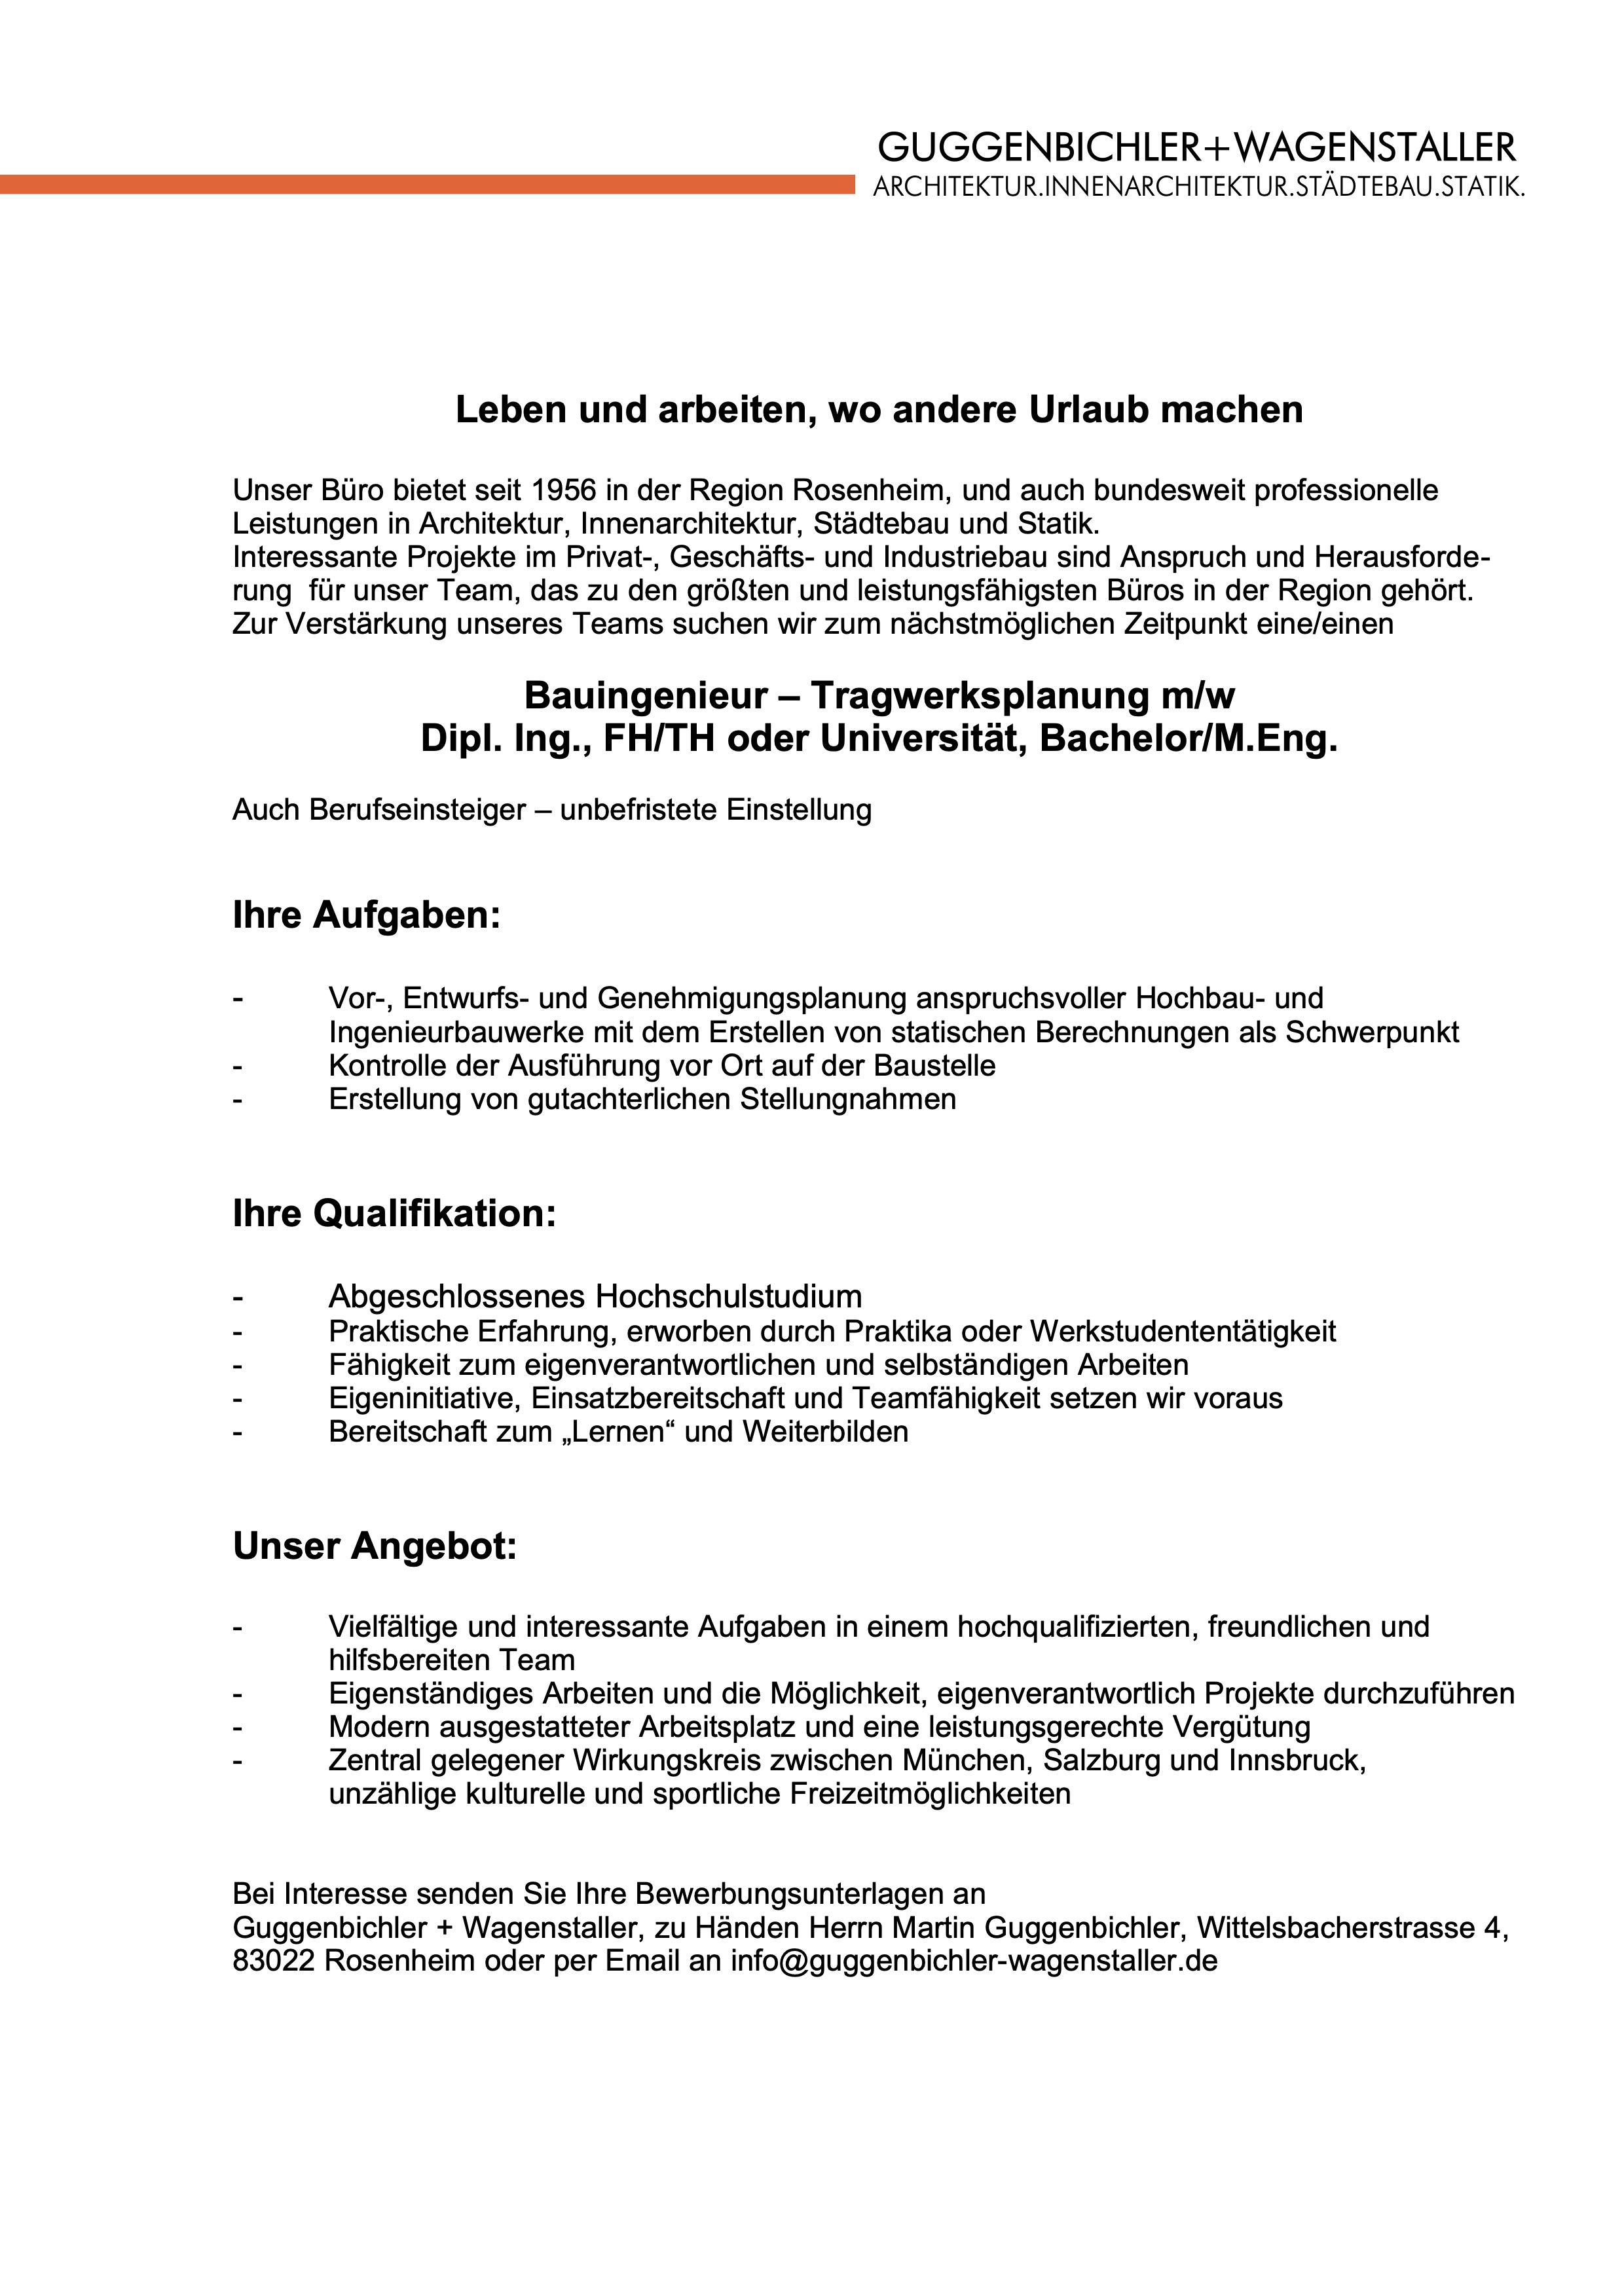 Bauingenieur - Tragwerksplanung (m/w/d) - Guggenbichler + Wagenstaller